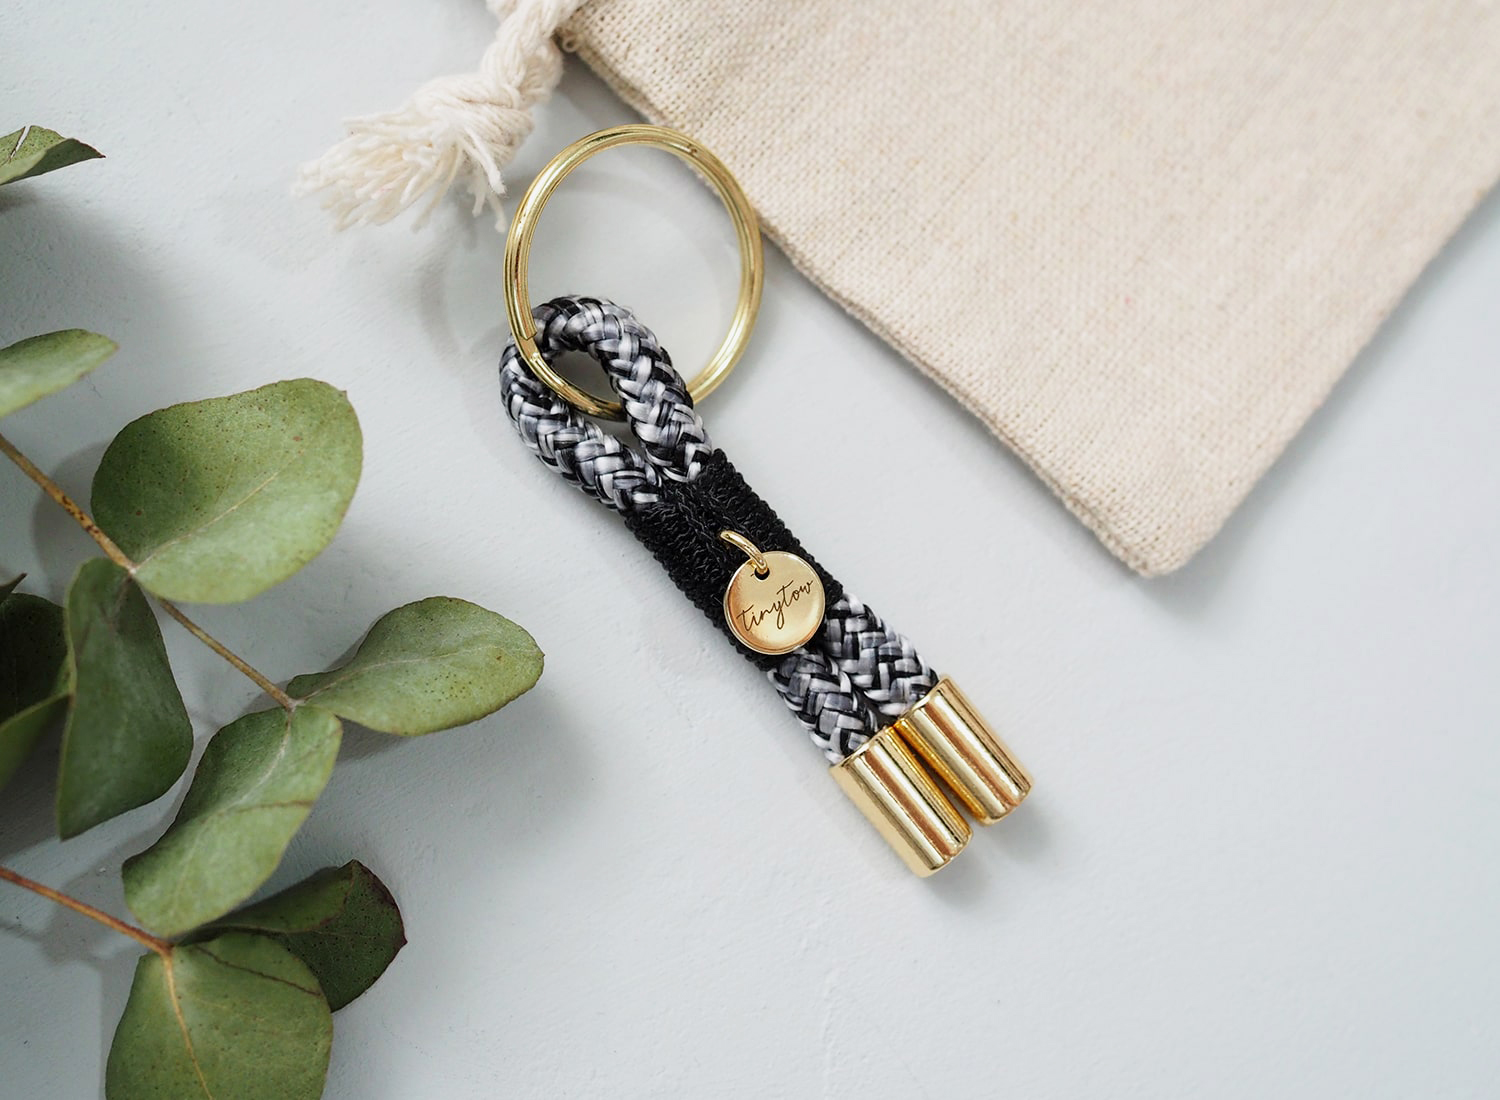 Schlüsselanhänger Towy mit schwarz-weißem Tauseil, schwarzer Takelung und goldenen Details.